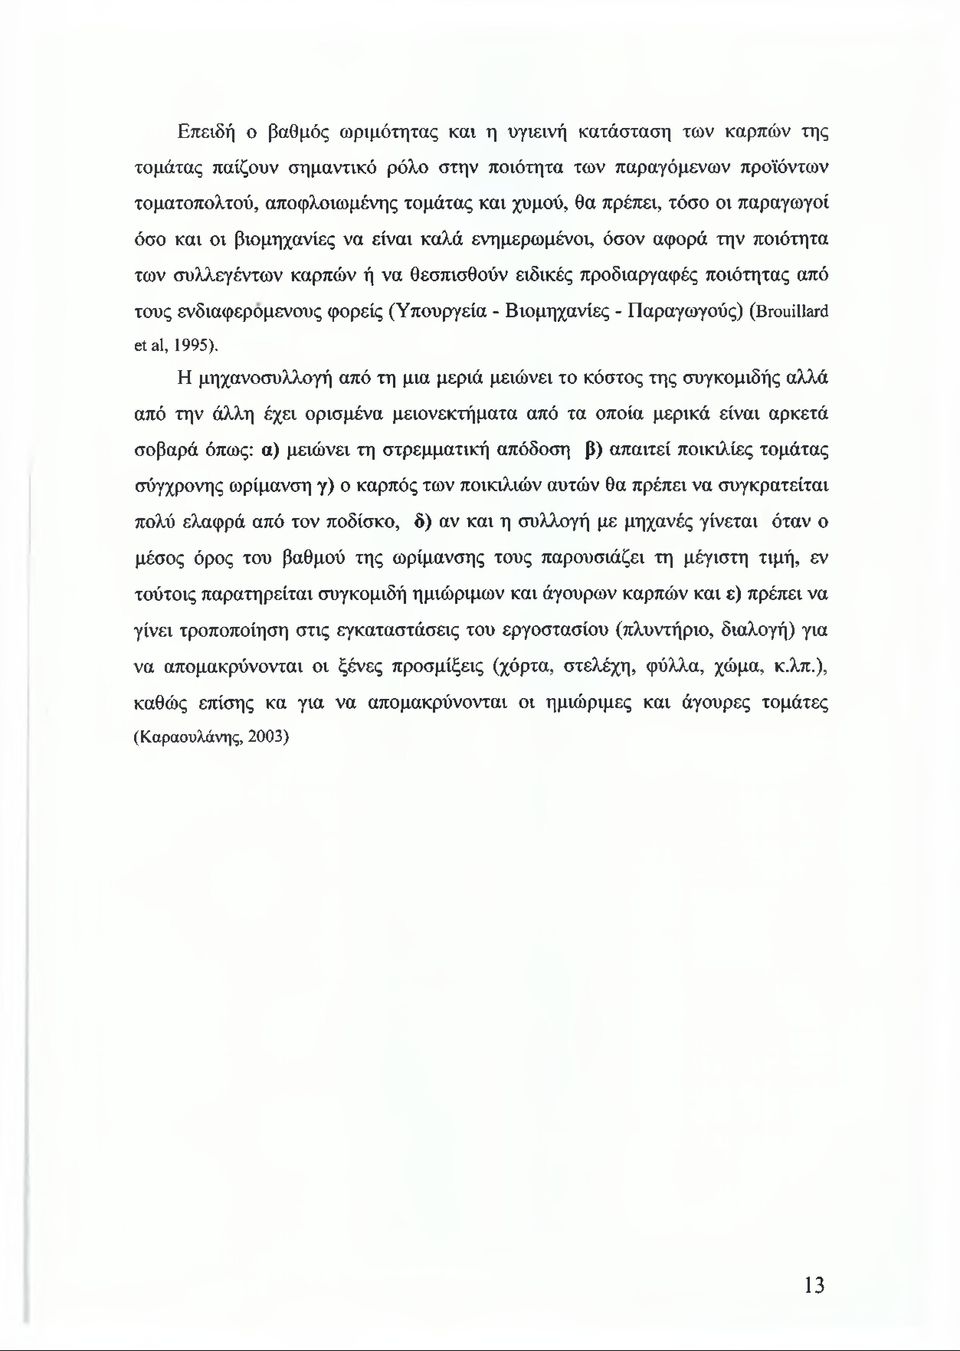 (Υπουργεία - Βιομηχανίες - Παραγωγούς) (Brouillard étal, 1995).